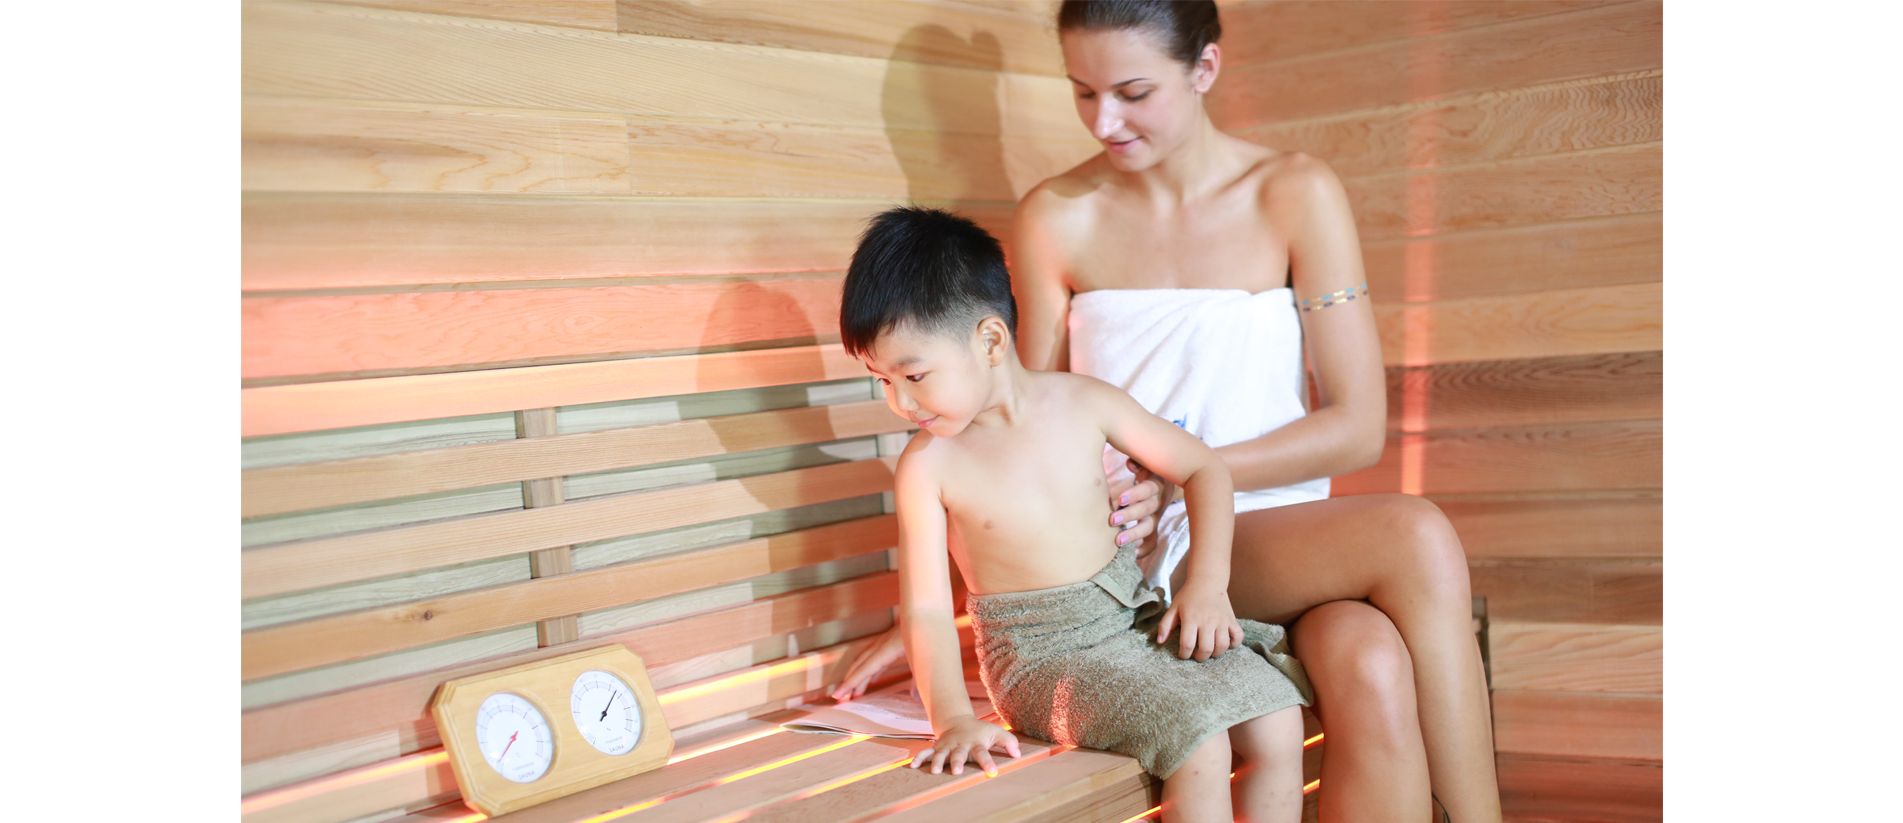 TOLO sauna room with real usage scenario